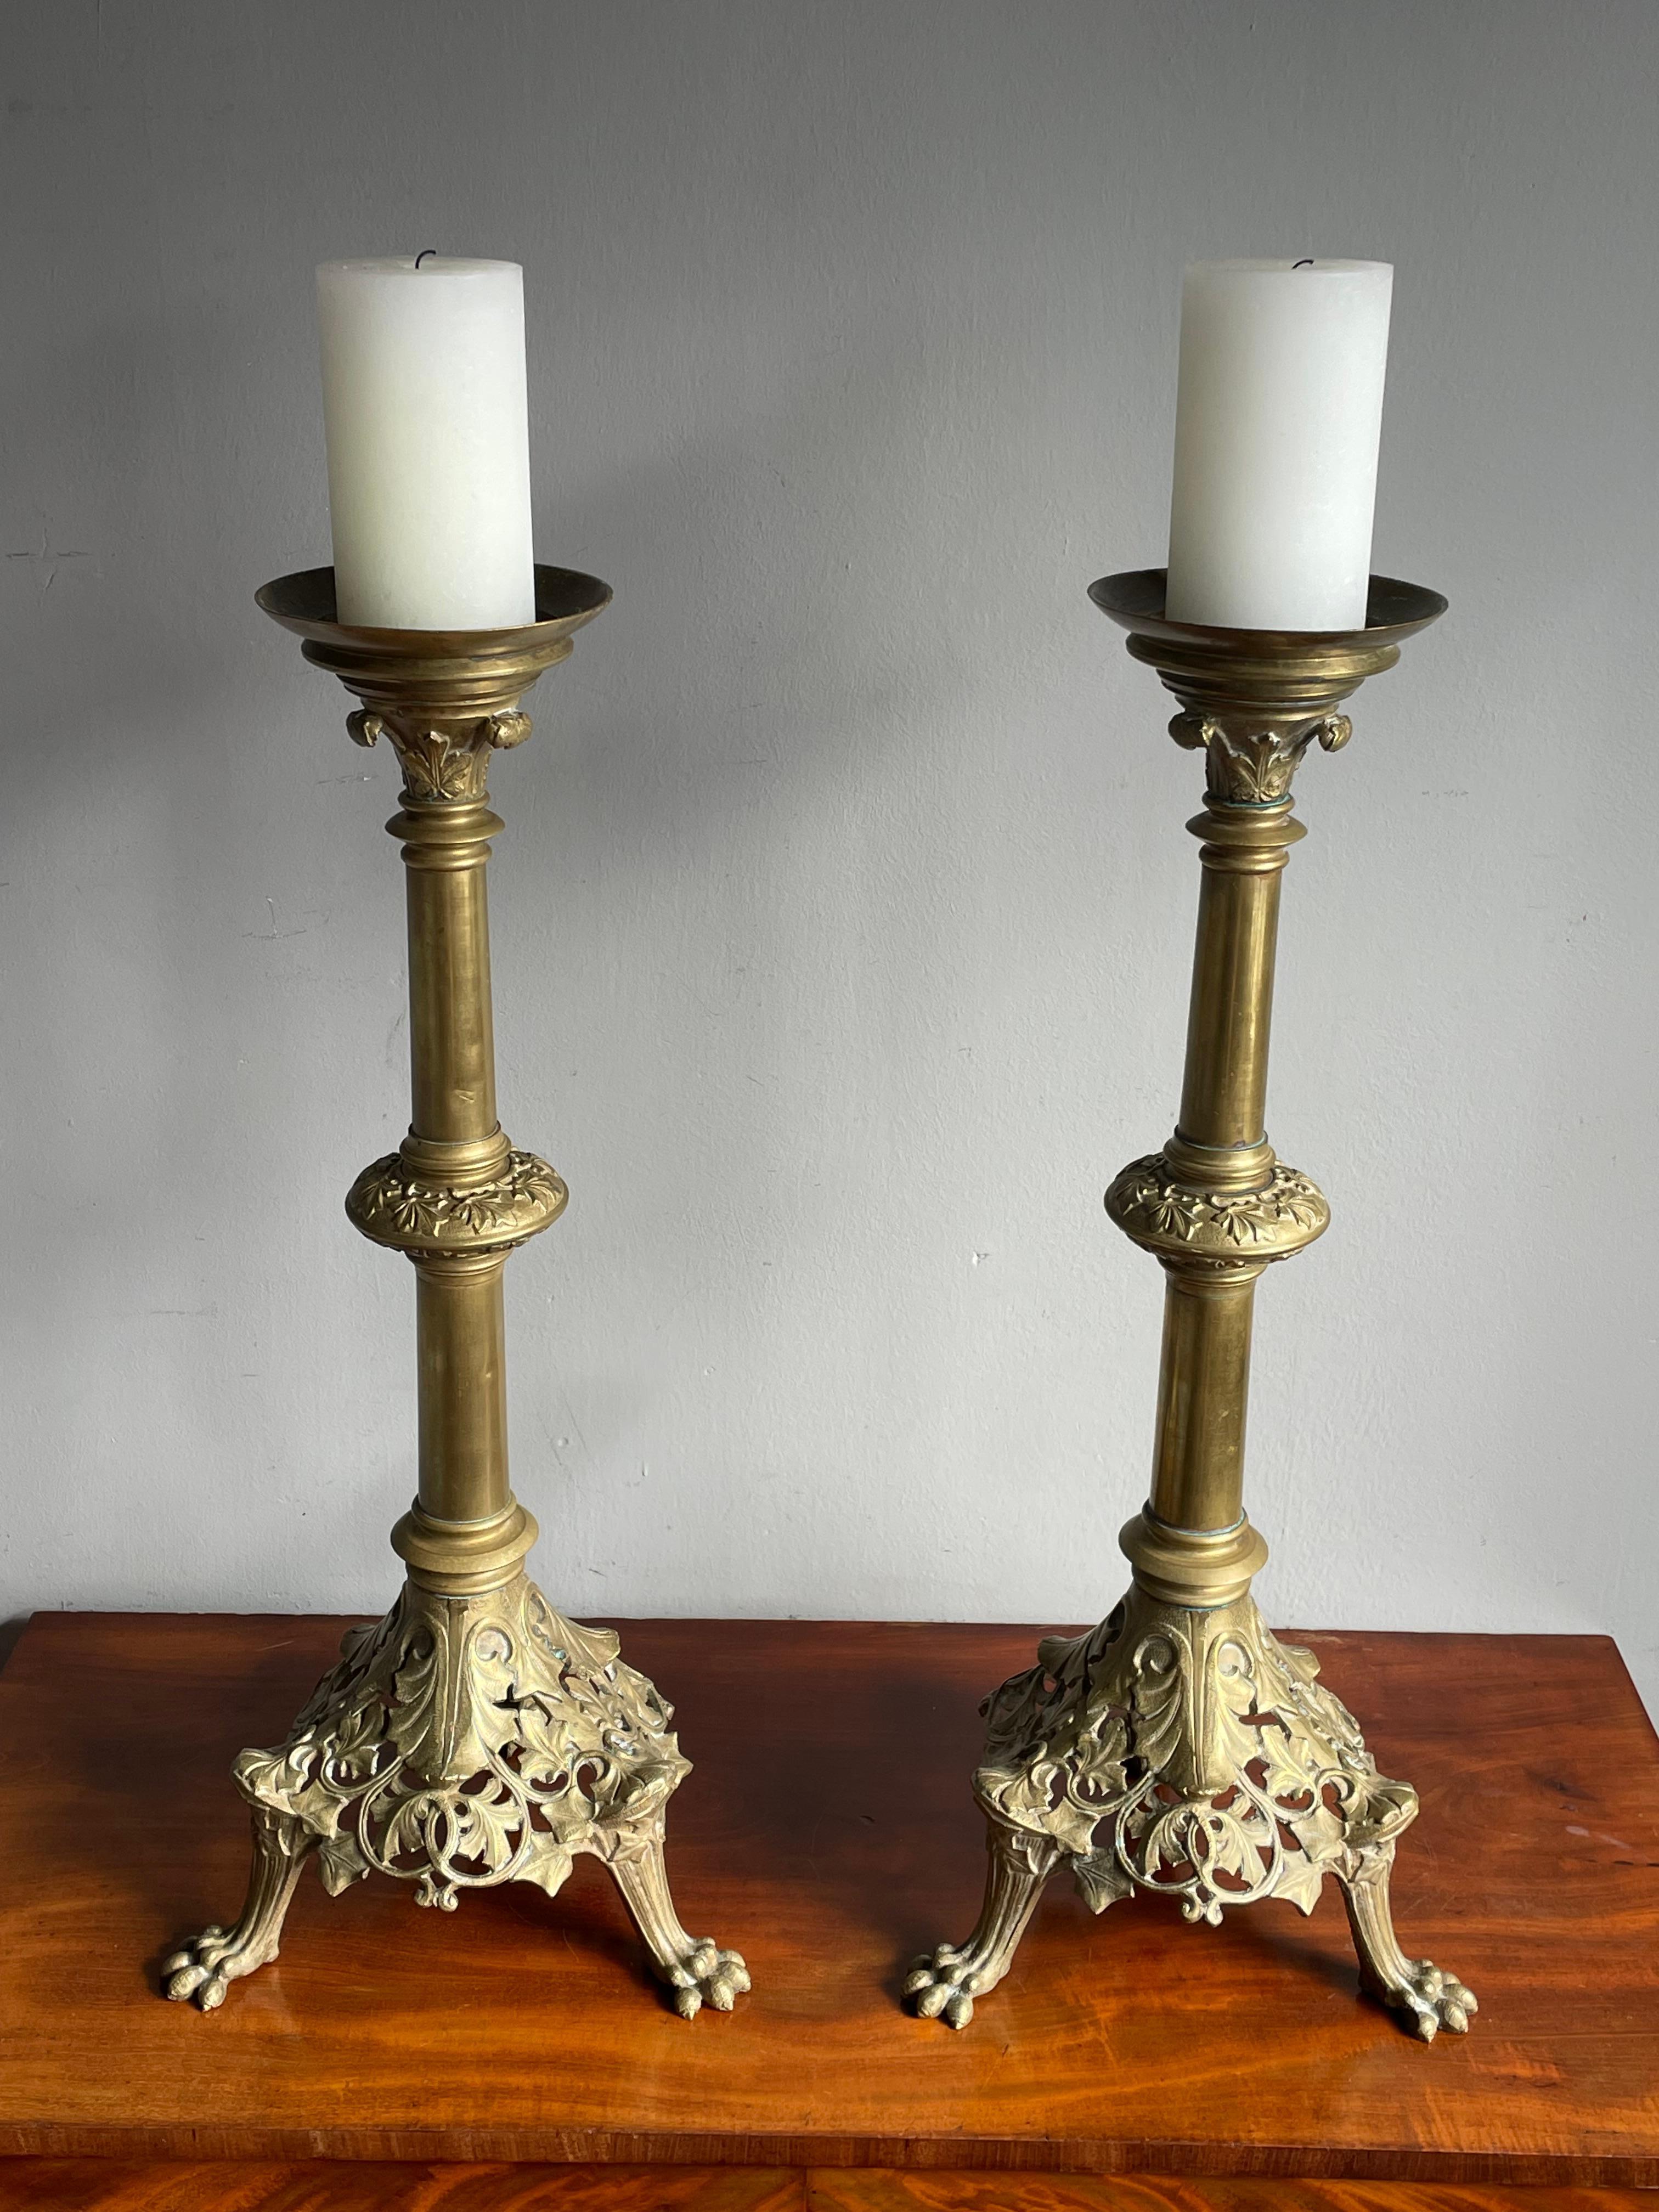 Superbe paire de bougeoirs anciens de style gothique.

Si vous êtes à la recherche d'une paire de chandeliers d'église élégante et de bonne taille pour créer une atmosphère particulière, cette paire en bronze pourrait être parfaite pour vous. Ces